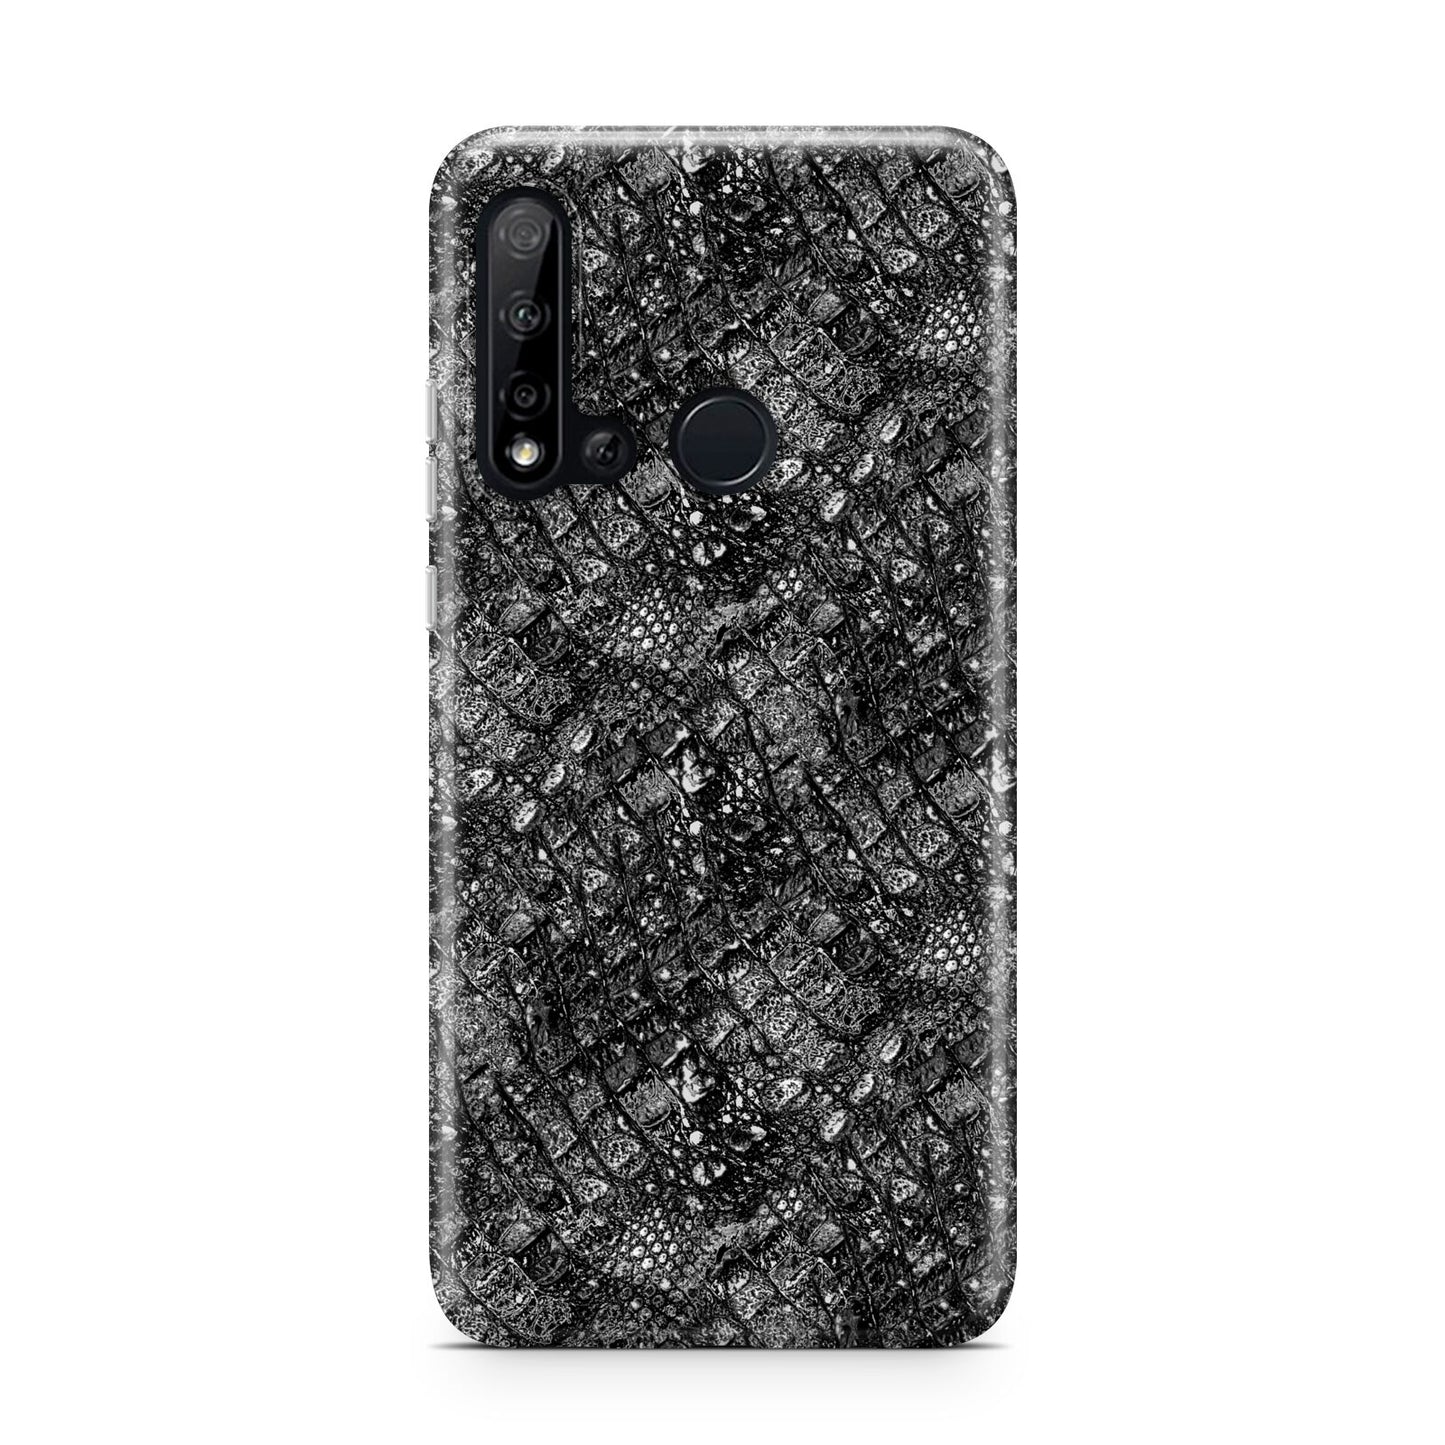 Snakeskin Design Huawei P20 Lite 5G Phone Case